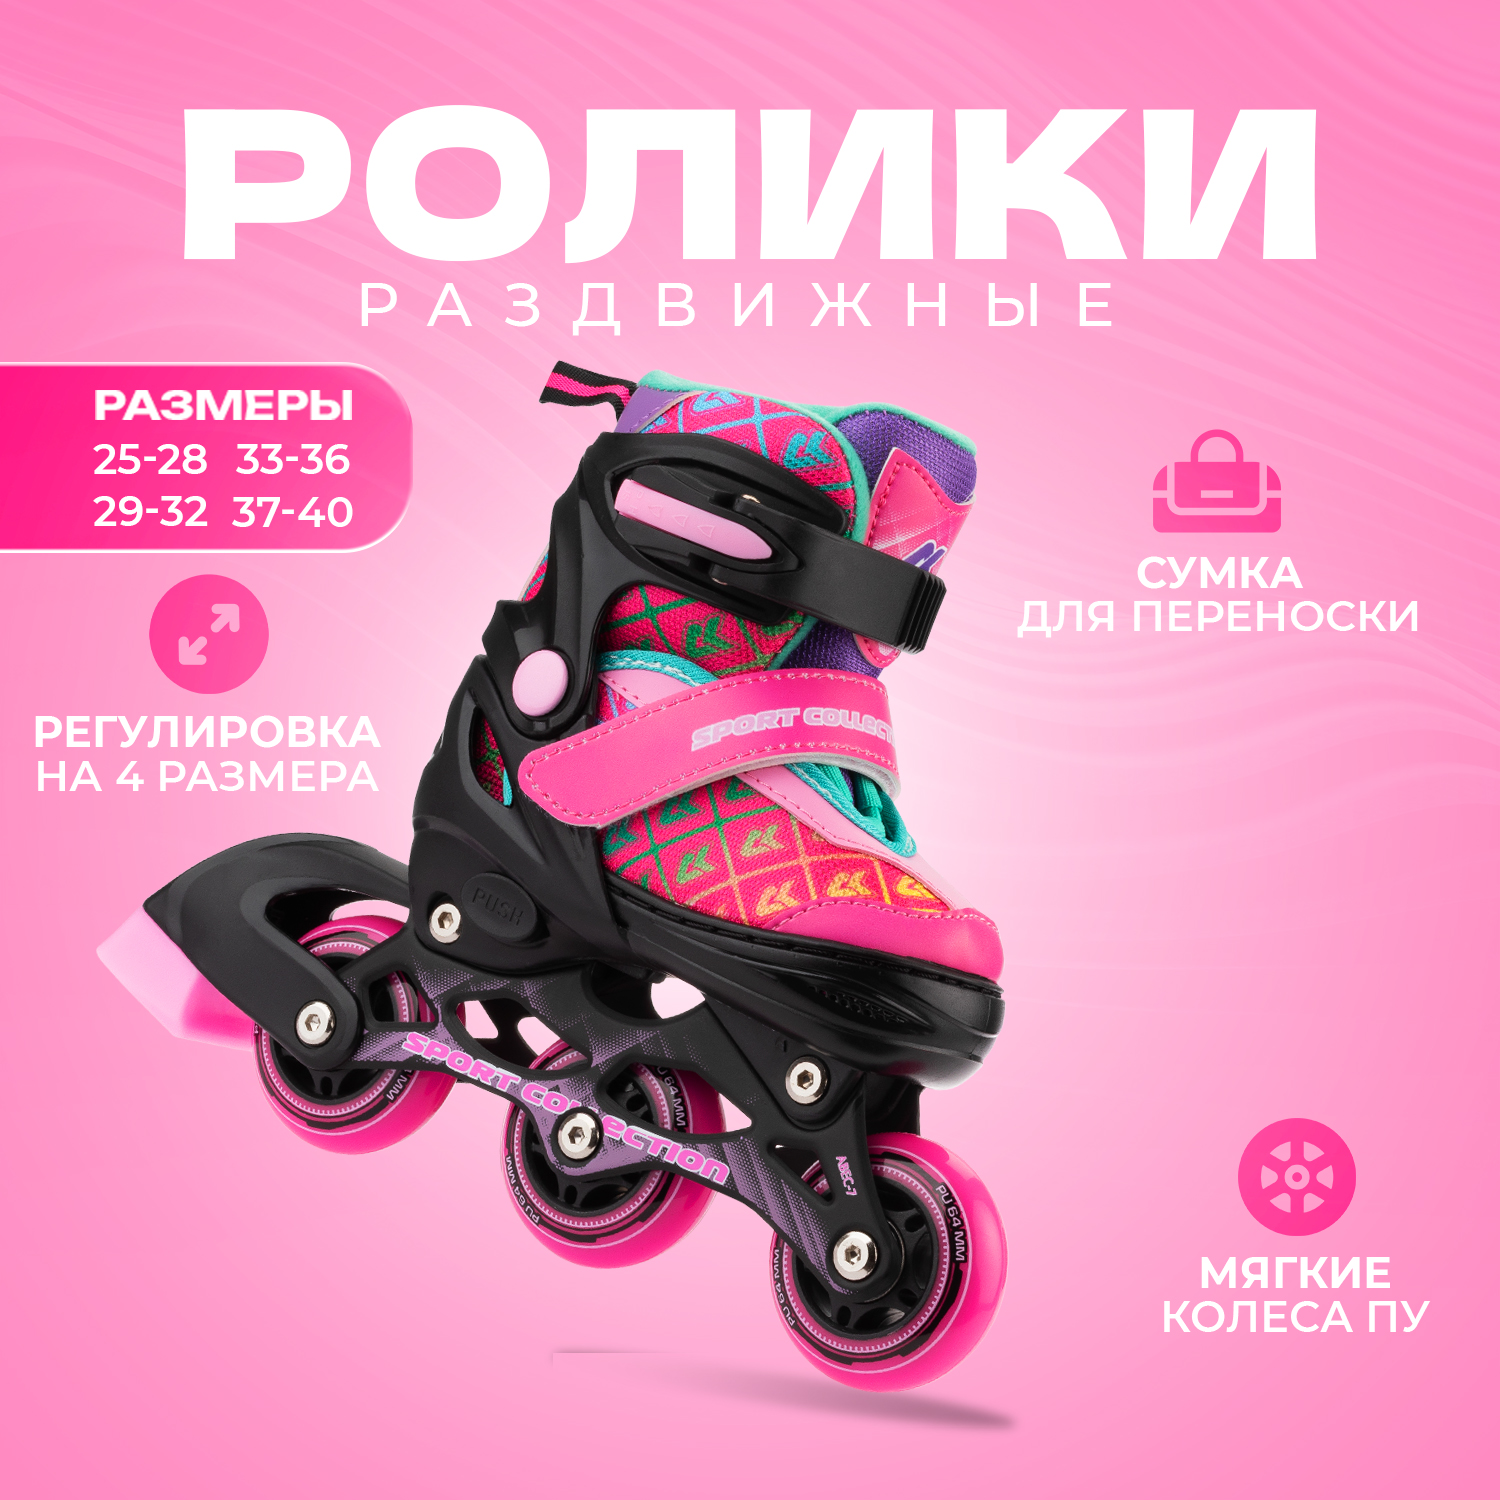 Раздвижные роликовые коньки Sport Collection CK Pink XS раздвижные коньки sport collection lovely pink с мехом l 37 40